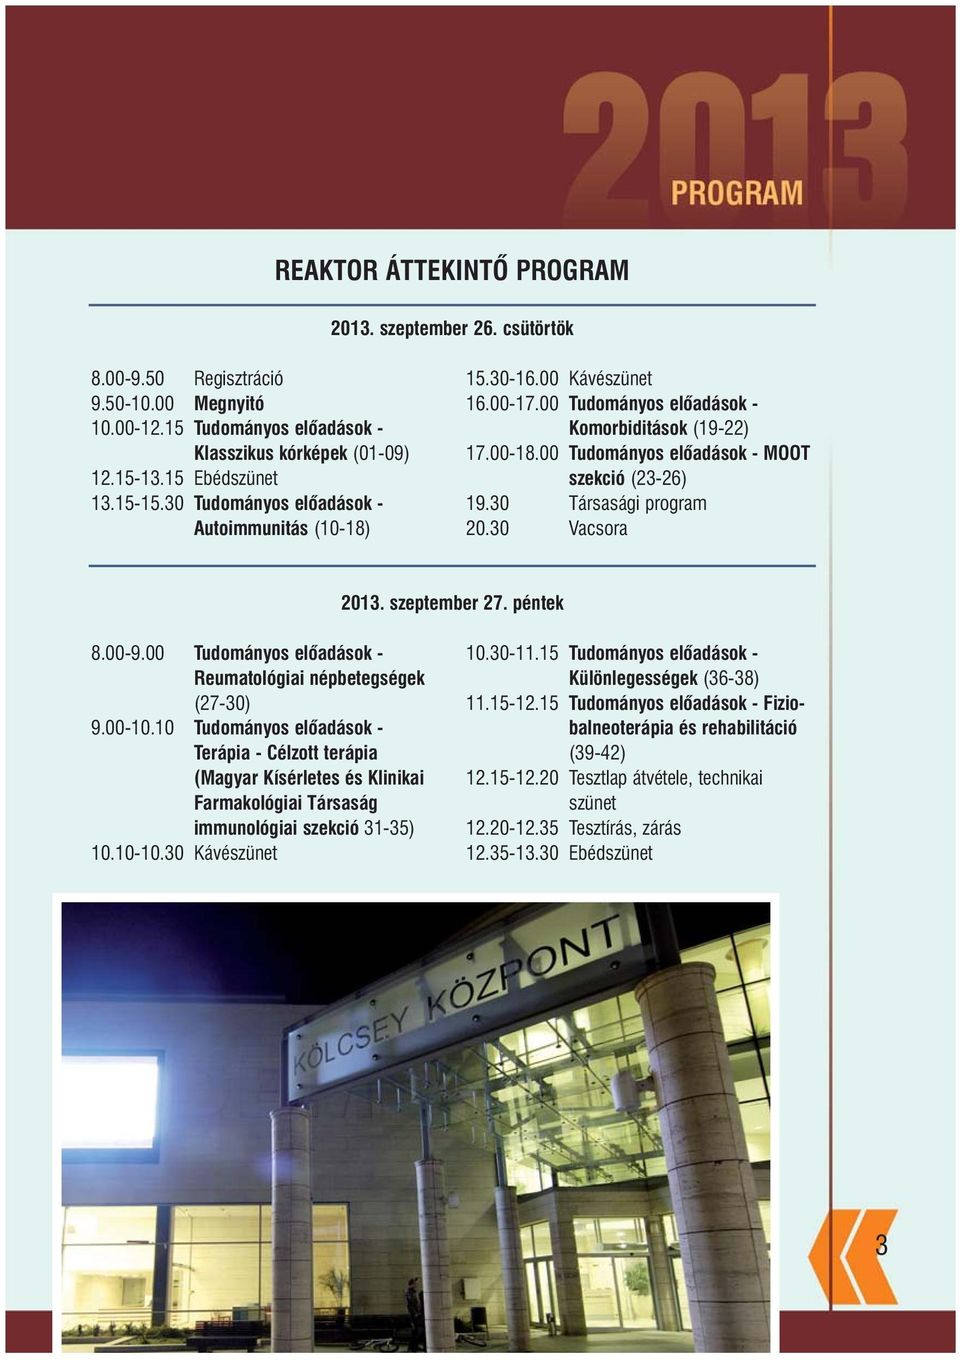 30 Társasági program 20.30 Vacsora 2013. szeptember 27. péntek 8.00-9.00 Tudományos elõadások - Reumatológiai népbetegségek (27-30) 9.00-10.